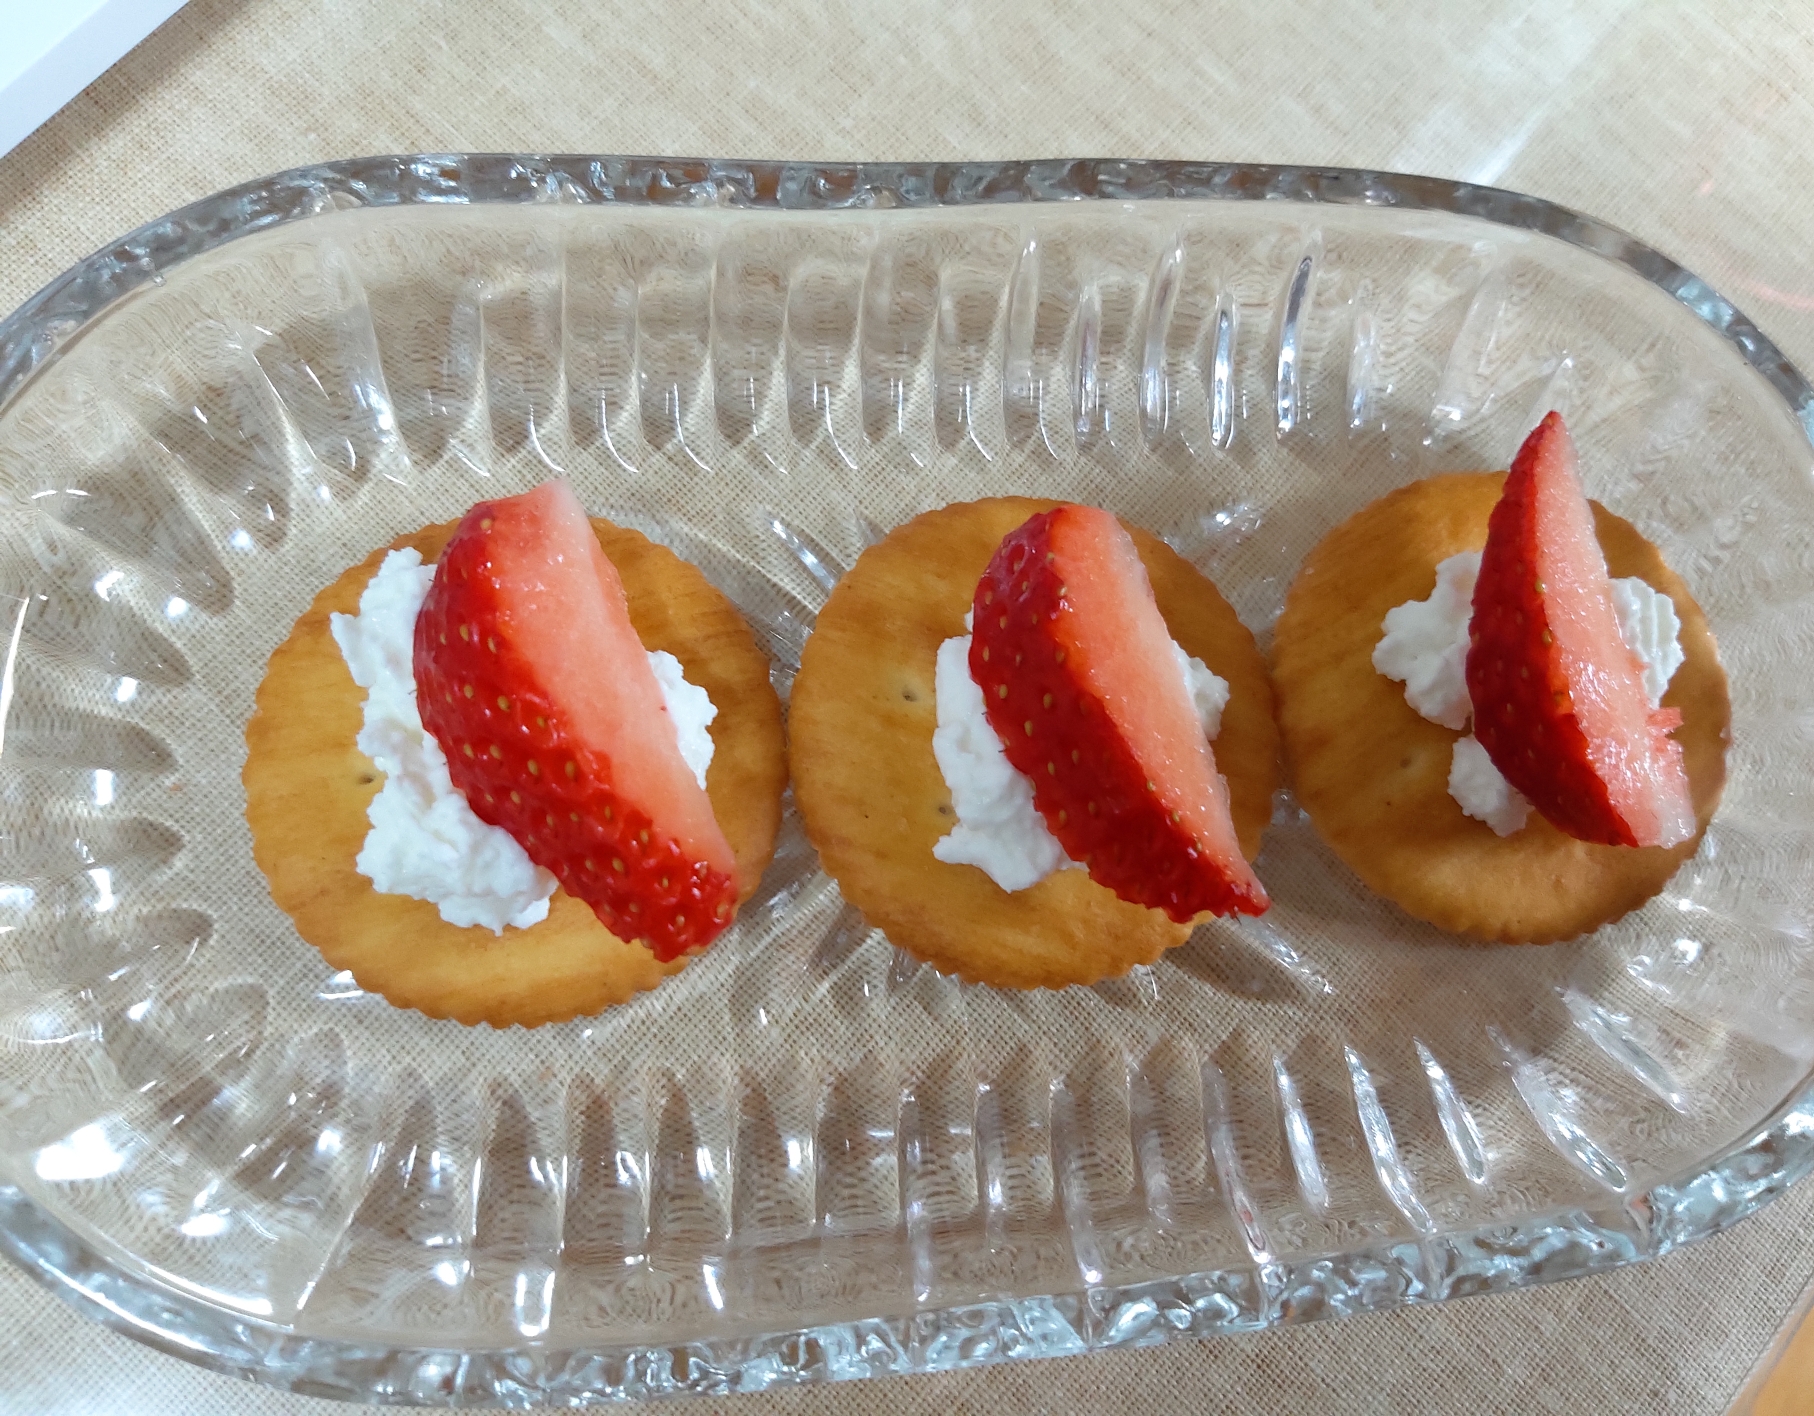 크래커 위에 리코타 치즈와 딸기